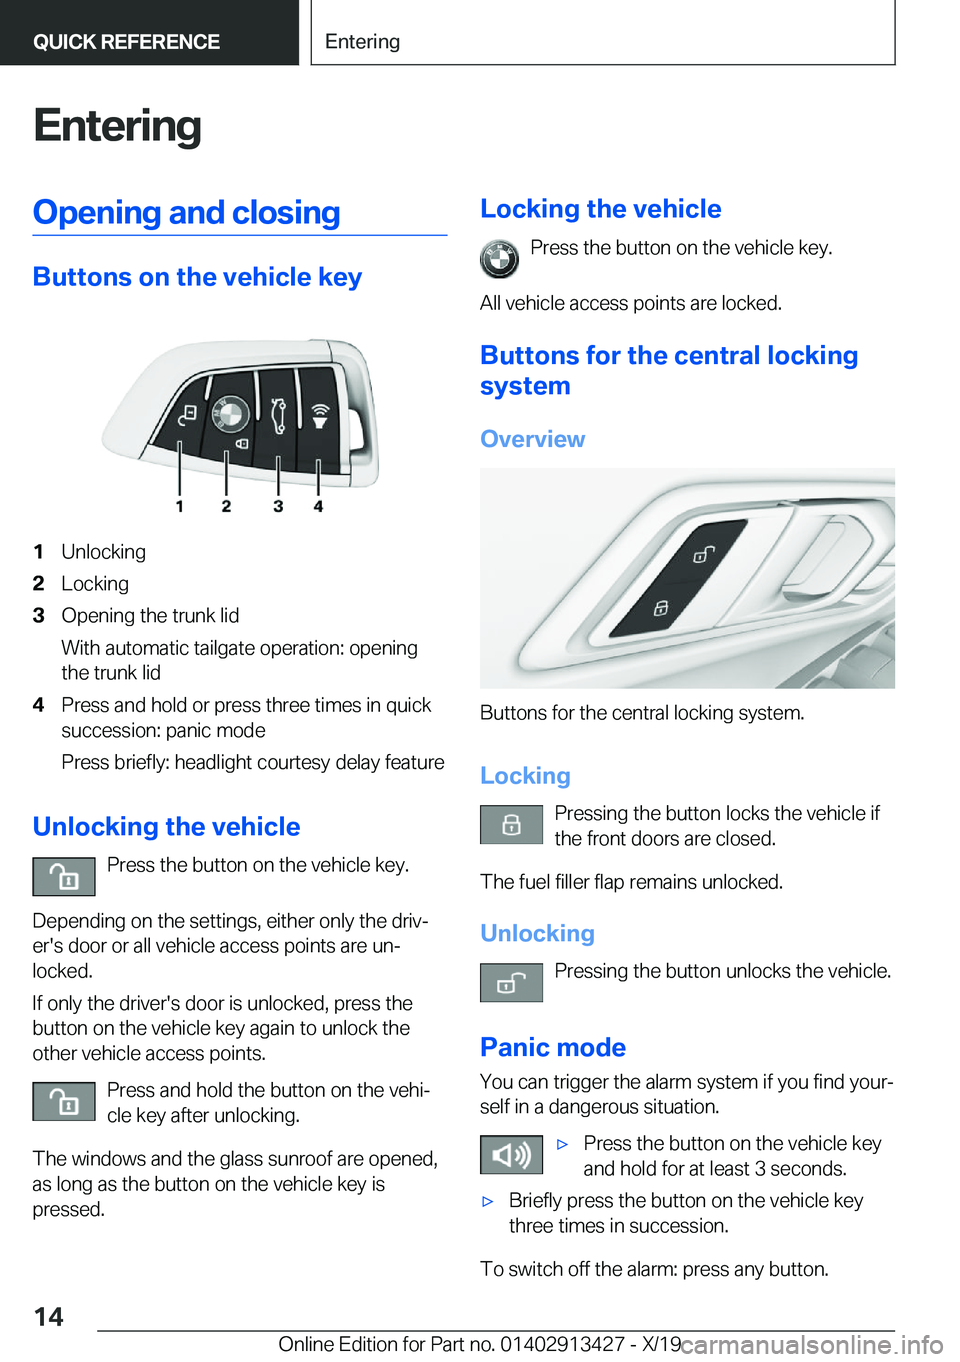 BMW 3 SERIES 2020 User Guide �E�n�t�e�r�i�n�g�O�p�e�n�i�n�g��a�n�d��c�l�o�s�i�n�g
�B�u�t�t�o�n�s��o�n��t�h�e��v�e�h�i�c�l�e��k�e�y
�1�U�n�l�o�c�k�i�n�g�2�L�o�c�k�i�n�g�3�O�p�e�n�i�n�g��t�h�e��t�r�u�n�k��l�i�d
�W�i�t�h��